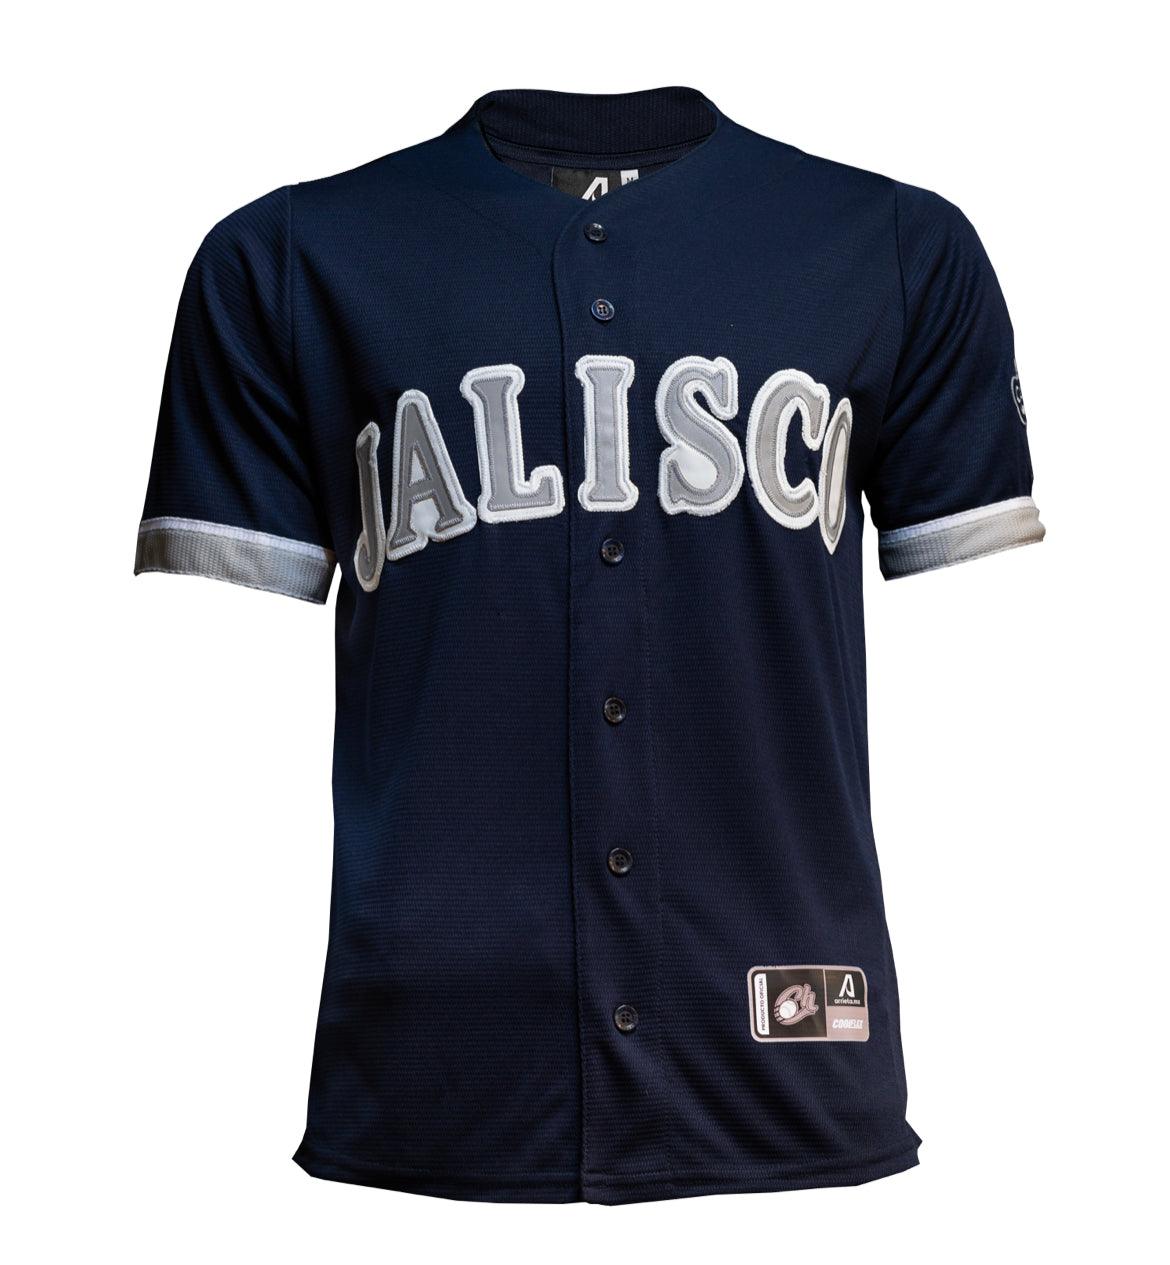 2023 Charros de Jalisco navy blue “JALISCO” jersey - BeisbolMXShop